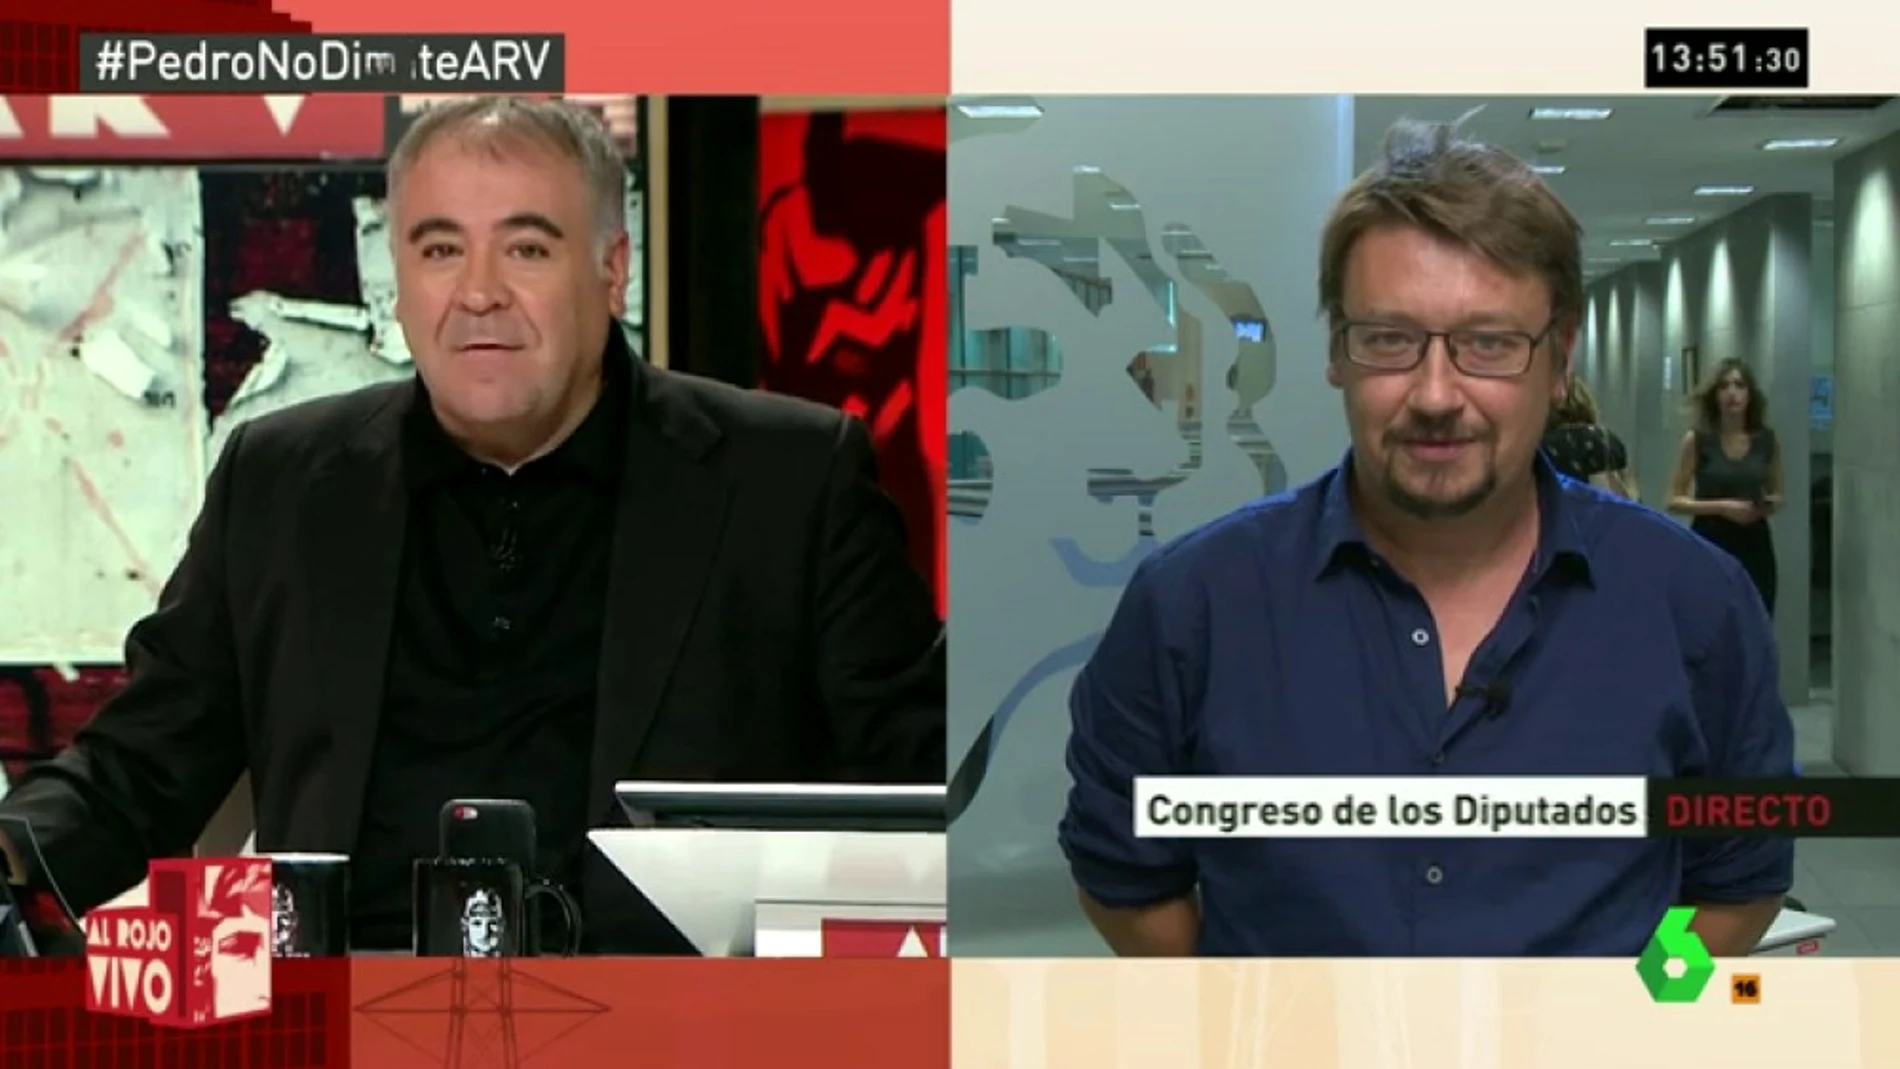 Domènech: "El PSOE tiene proyectos confrontados. Deben aclararse para pasar de ser el problema a la solución"